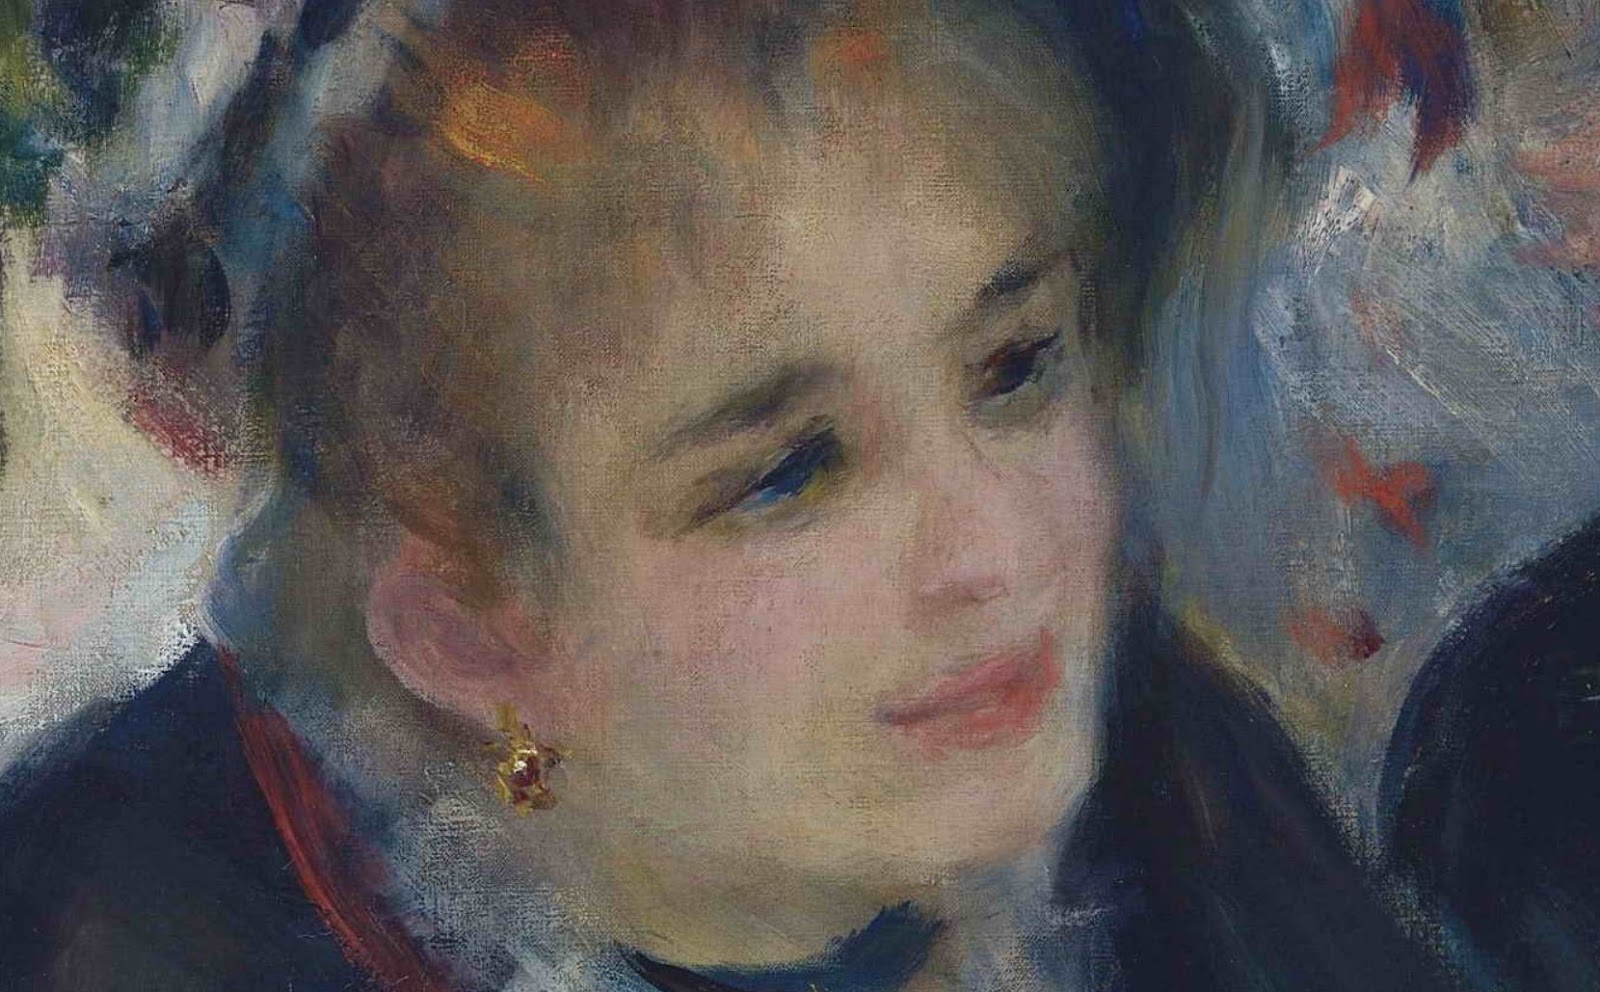 Pierre+Auguste+Renoir-1841-1-19 (423).JPG